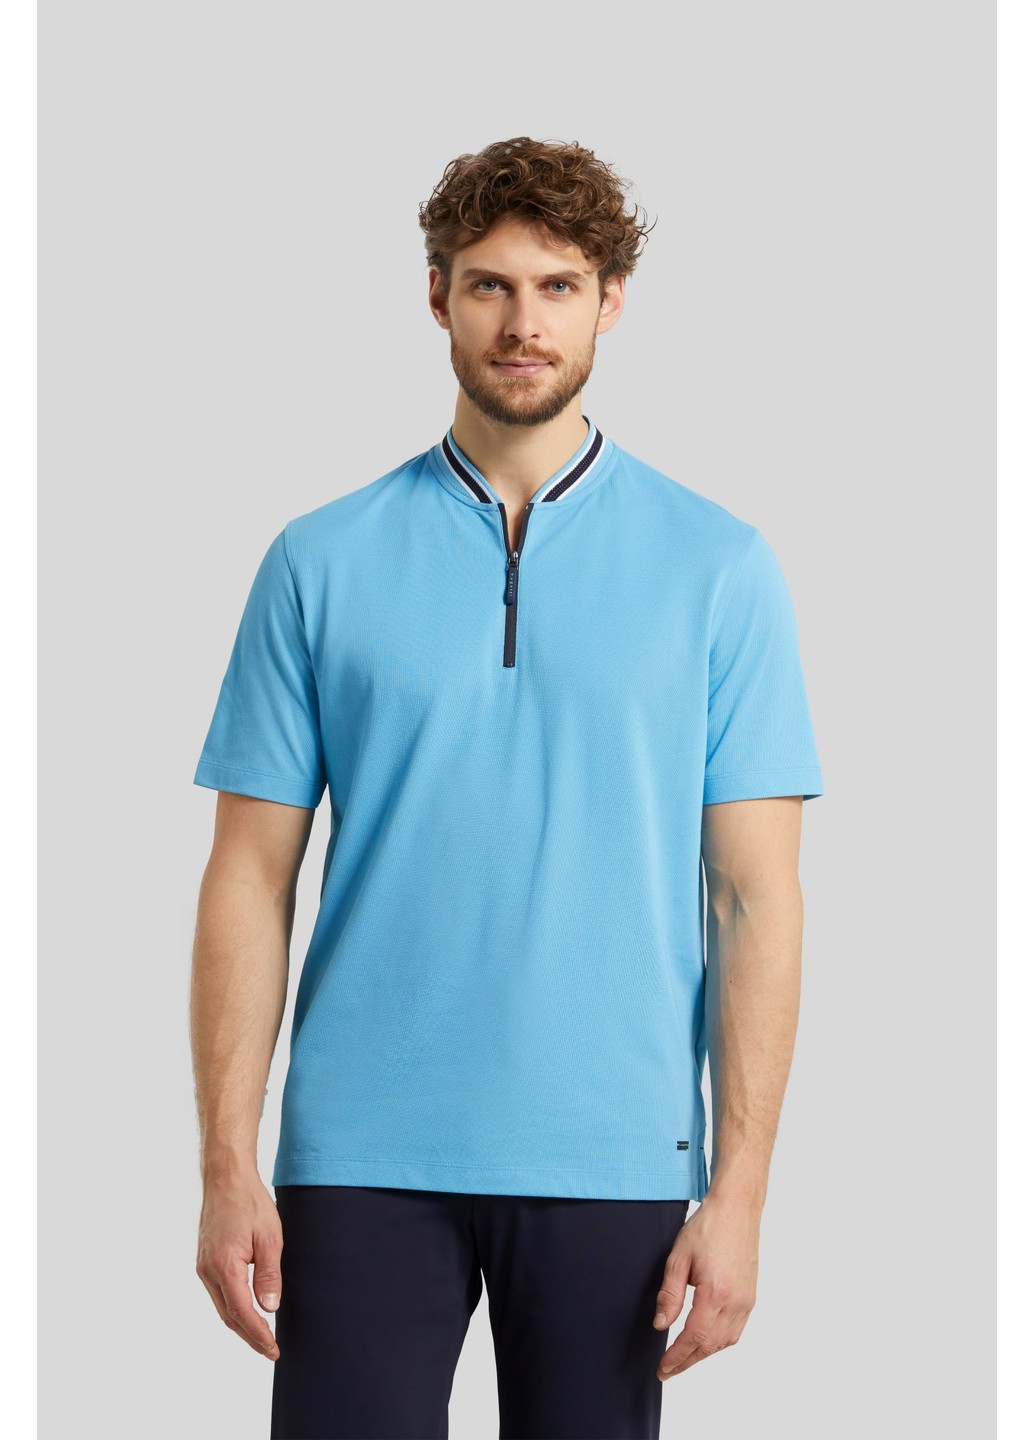 Голубой футболка-мужское поло голубой для мужчин Bugatti в полоску